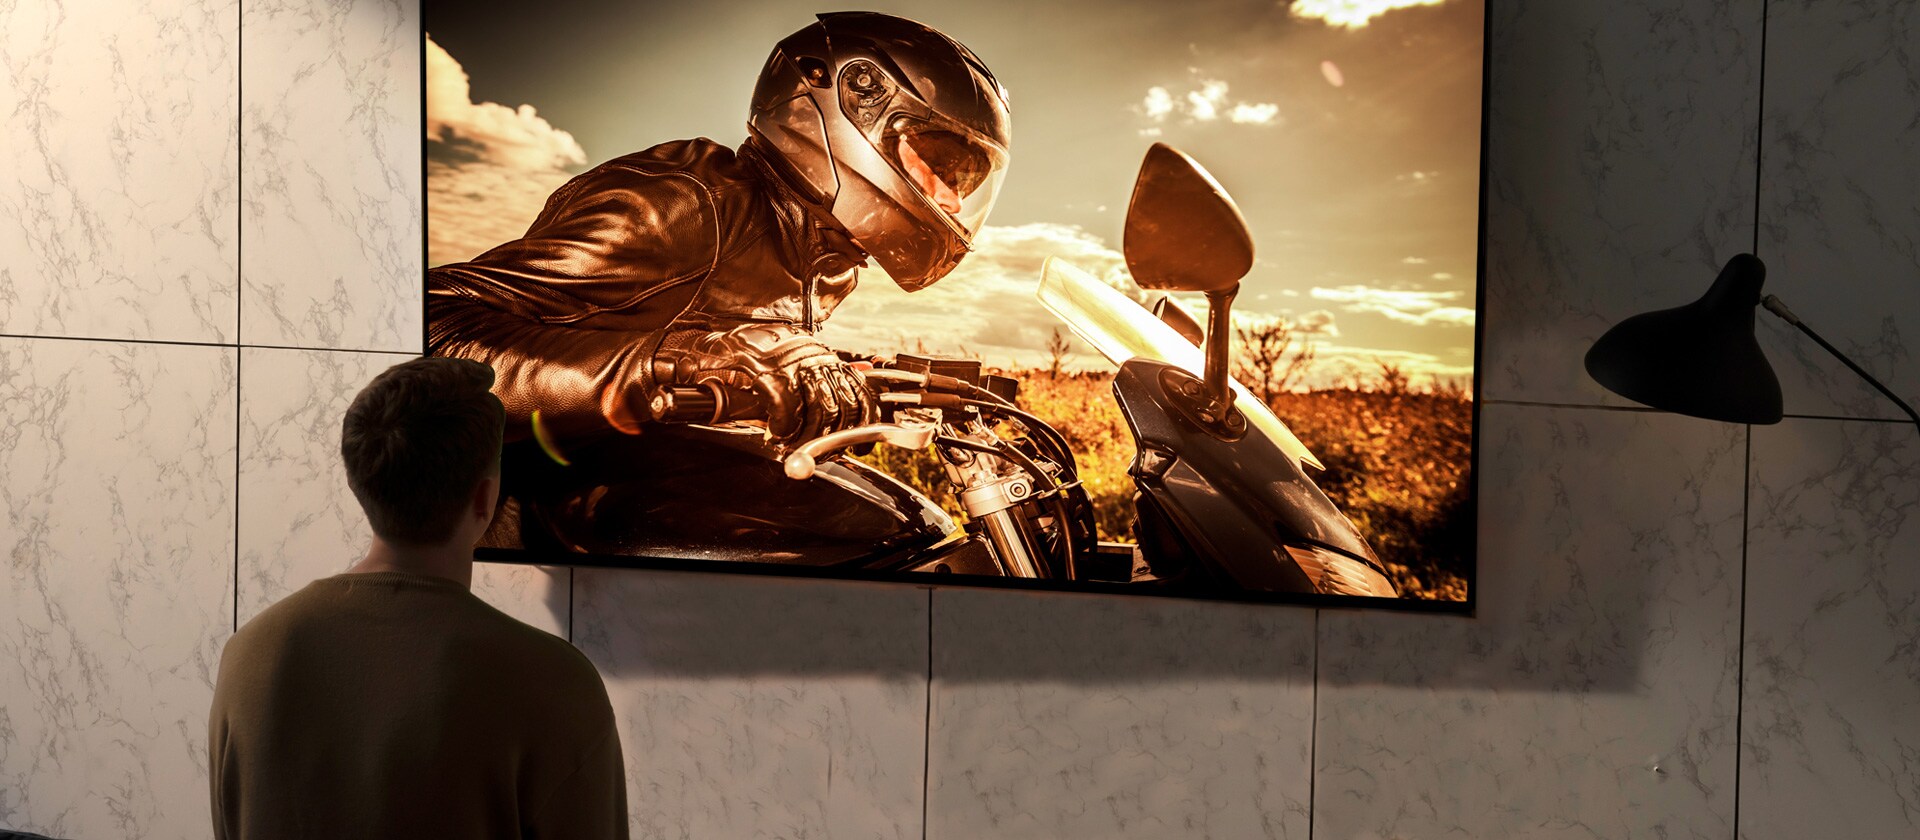 Prikaz čoveka otpozadi kako gleda televizor na zidu u dnevnoj sobi. Na ekranu je scena iz filma sa motociklom.